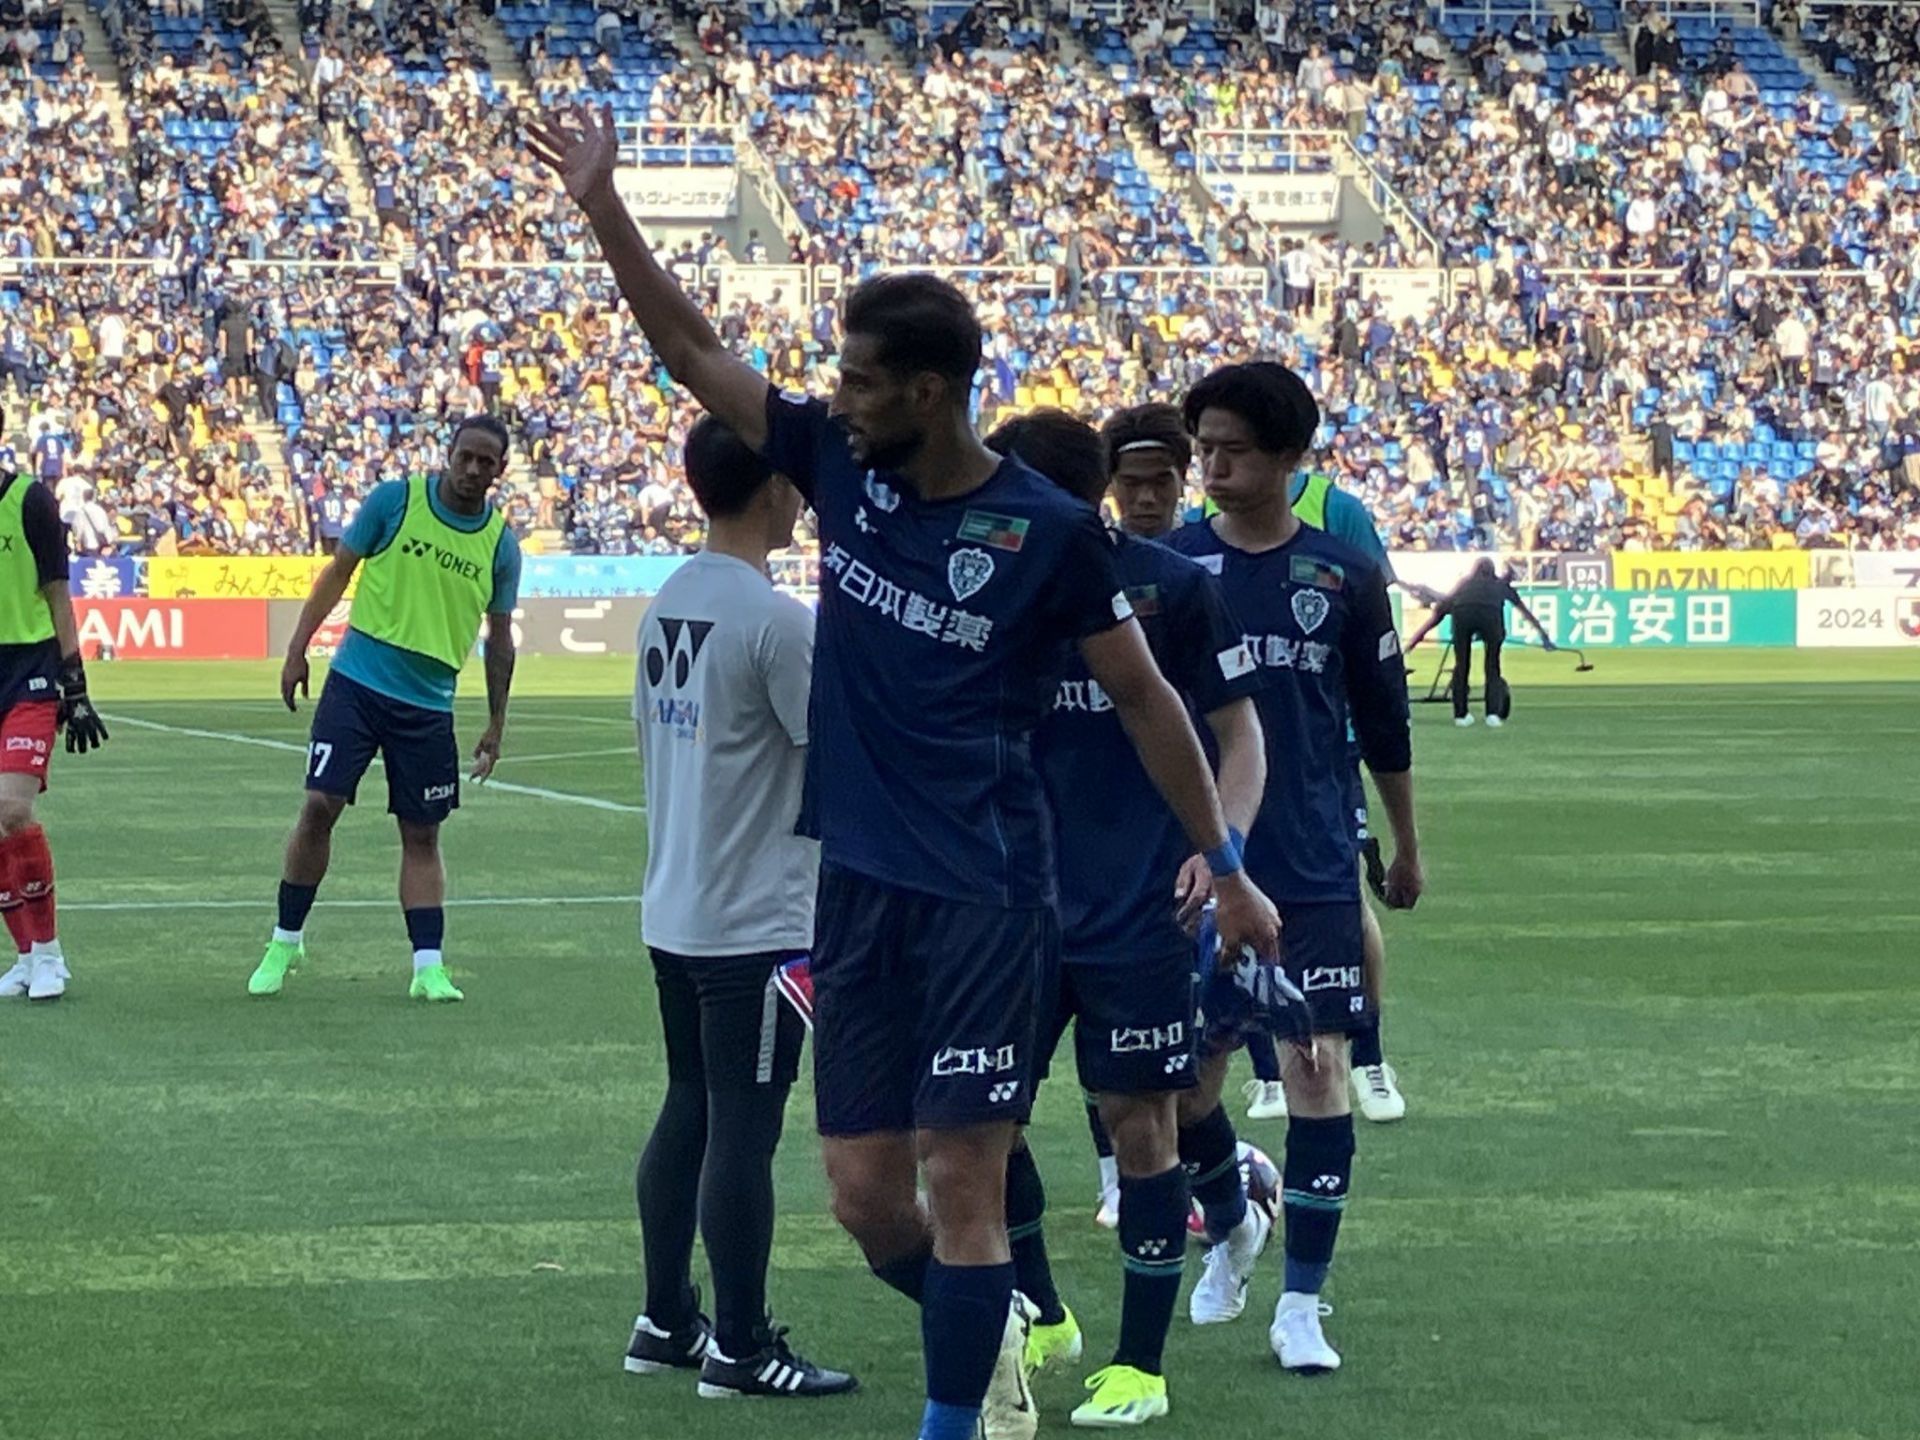 Avispa Fukuoka face Cerezo Osaka on Saturday 